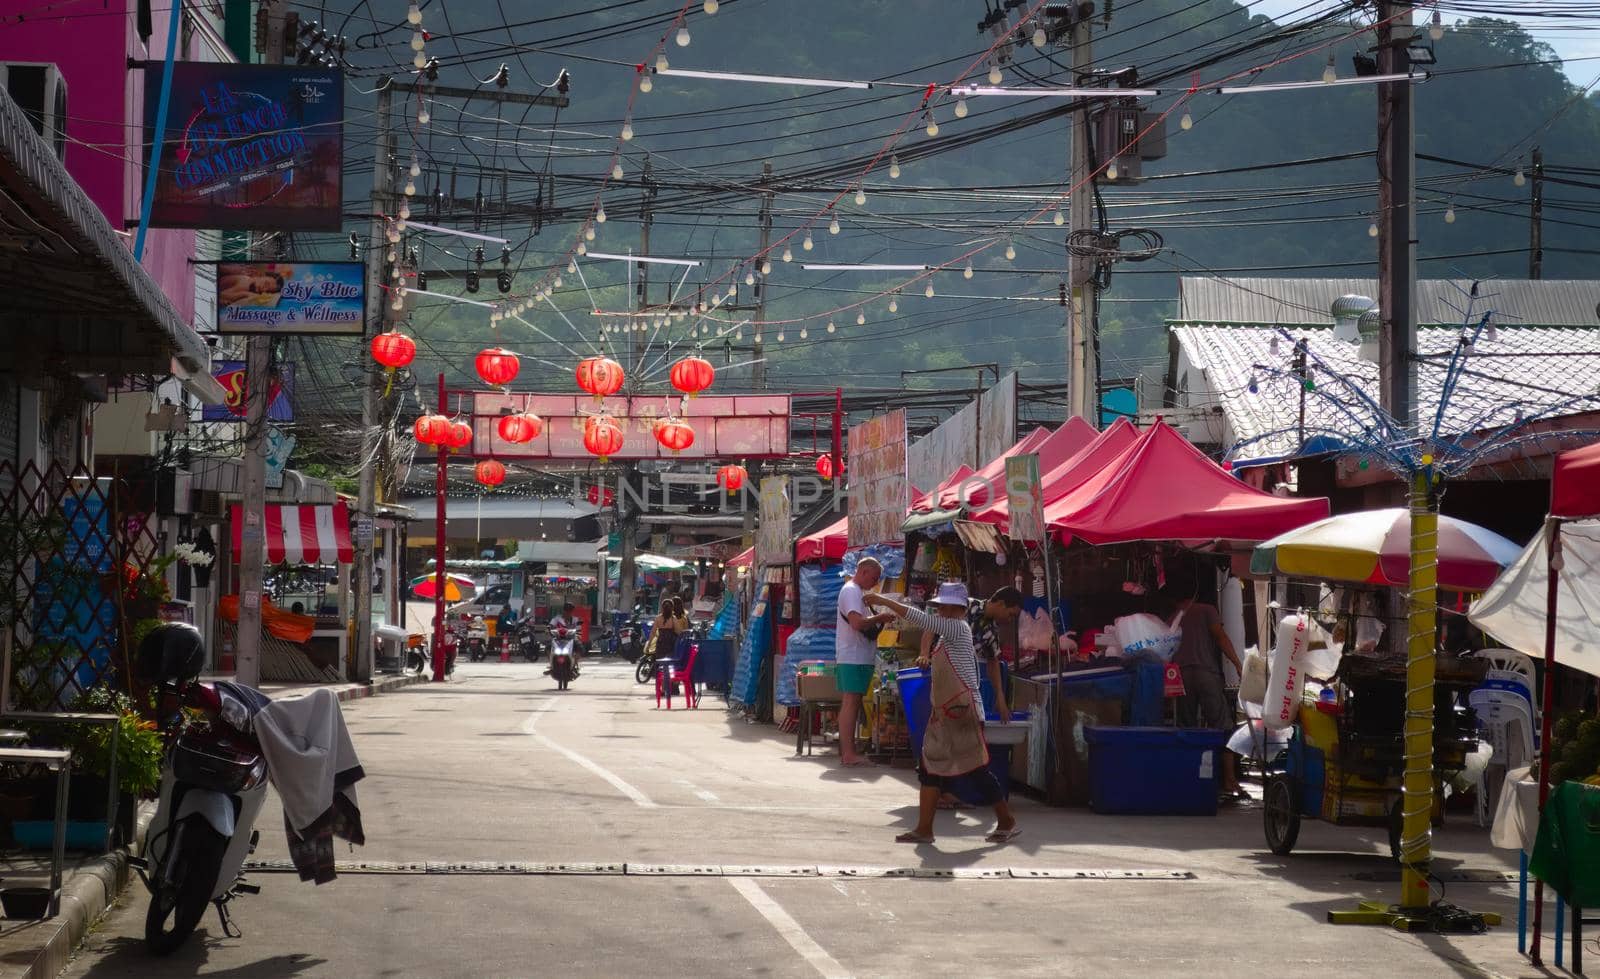 2019-11-05 / Phuket, Thailand - Fresh food street market near Patong Beach. by hernan_hyper